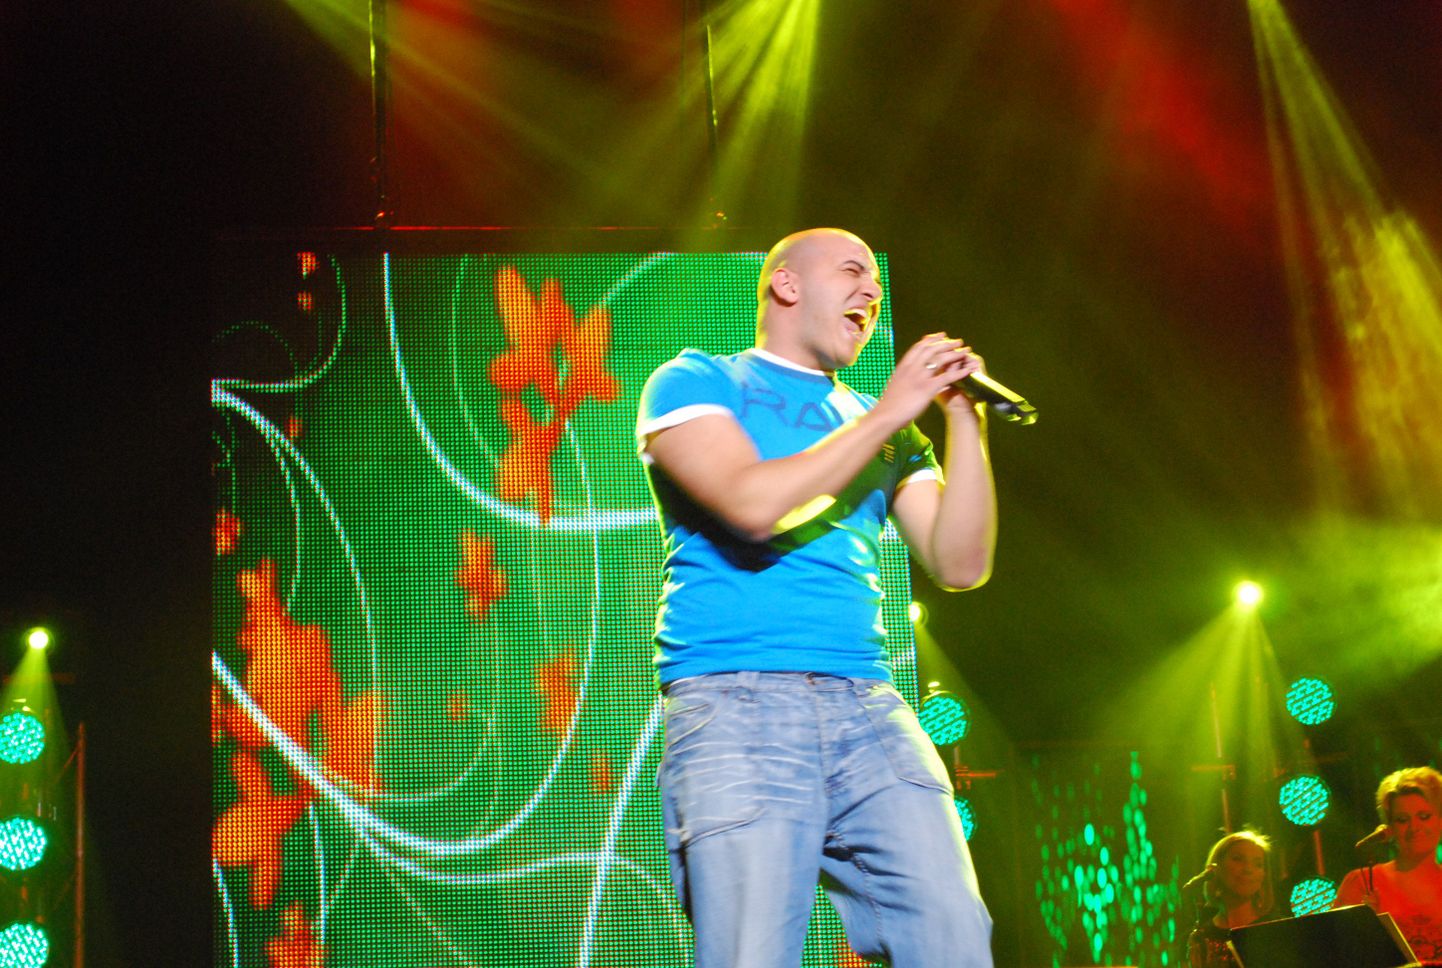 "Eesti otsib superstaari" salvestus Pärnu kontserdimajas 20. aprillil 2008